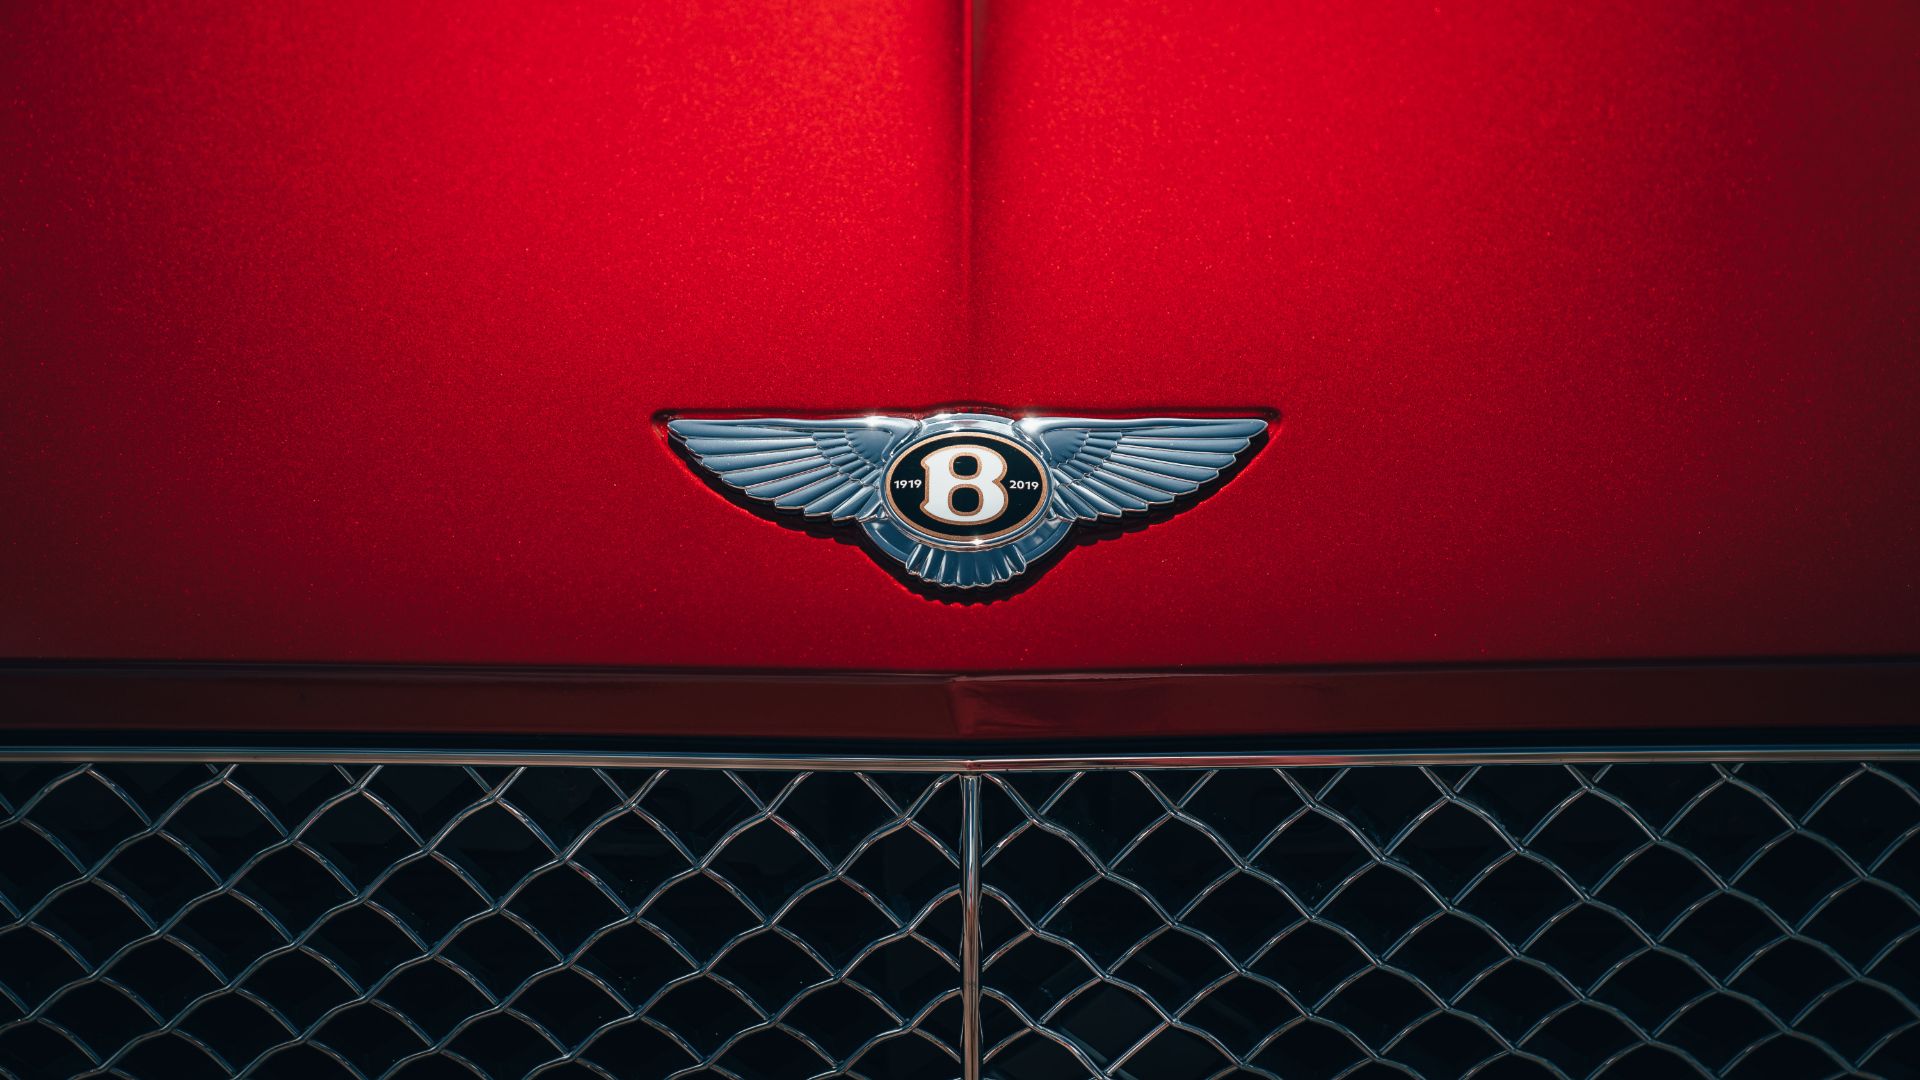 The Bentley emblem is asymmetrical